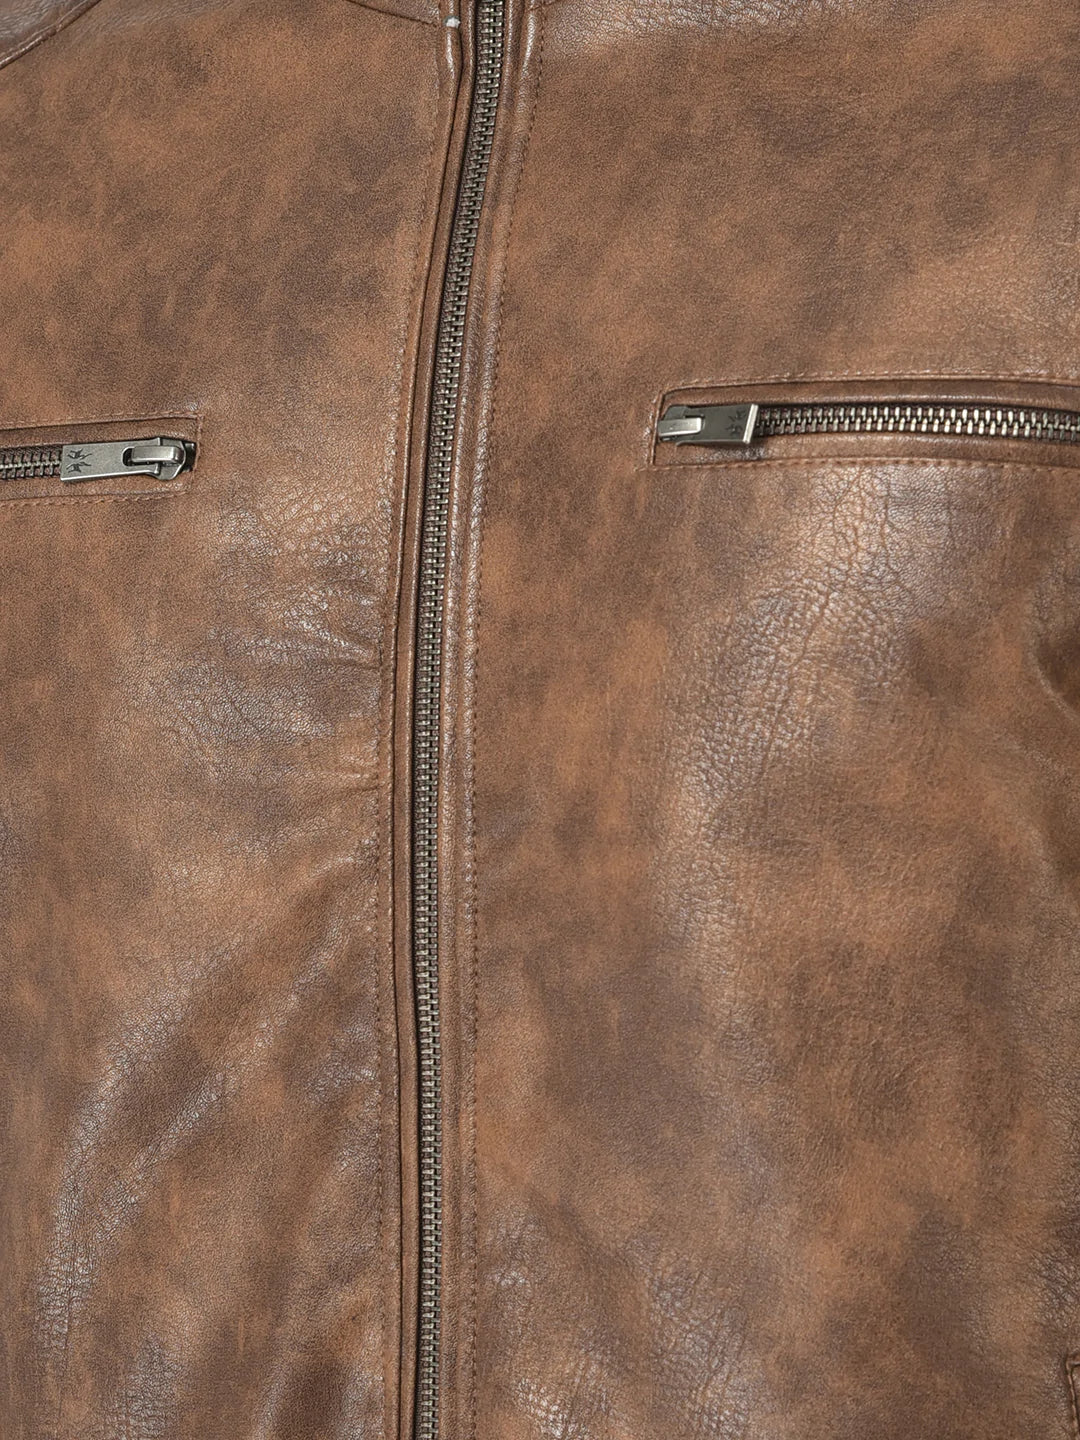  Tan Tie-Dye Effect Leather Jacket